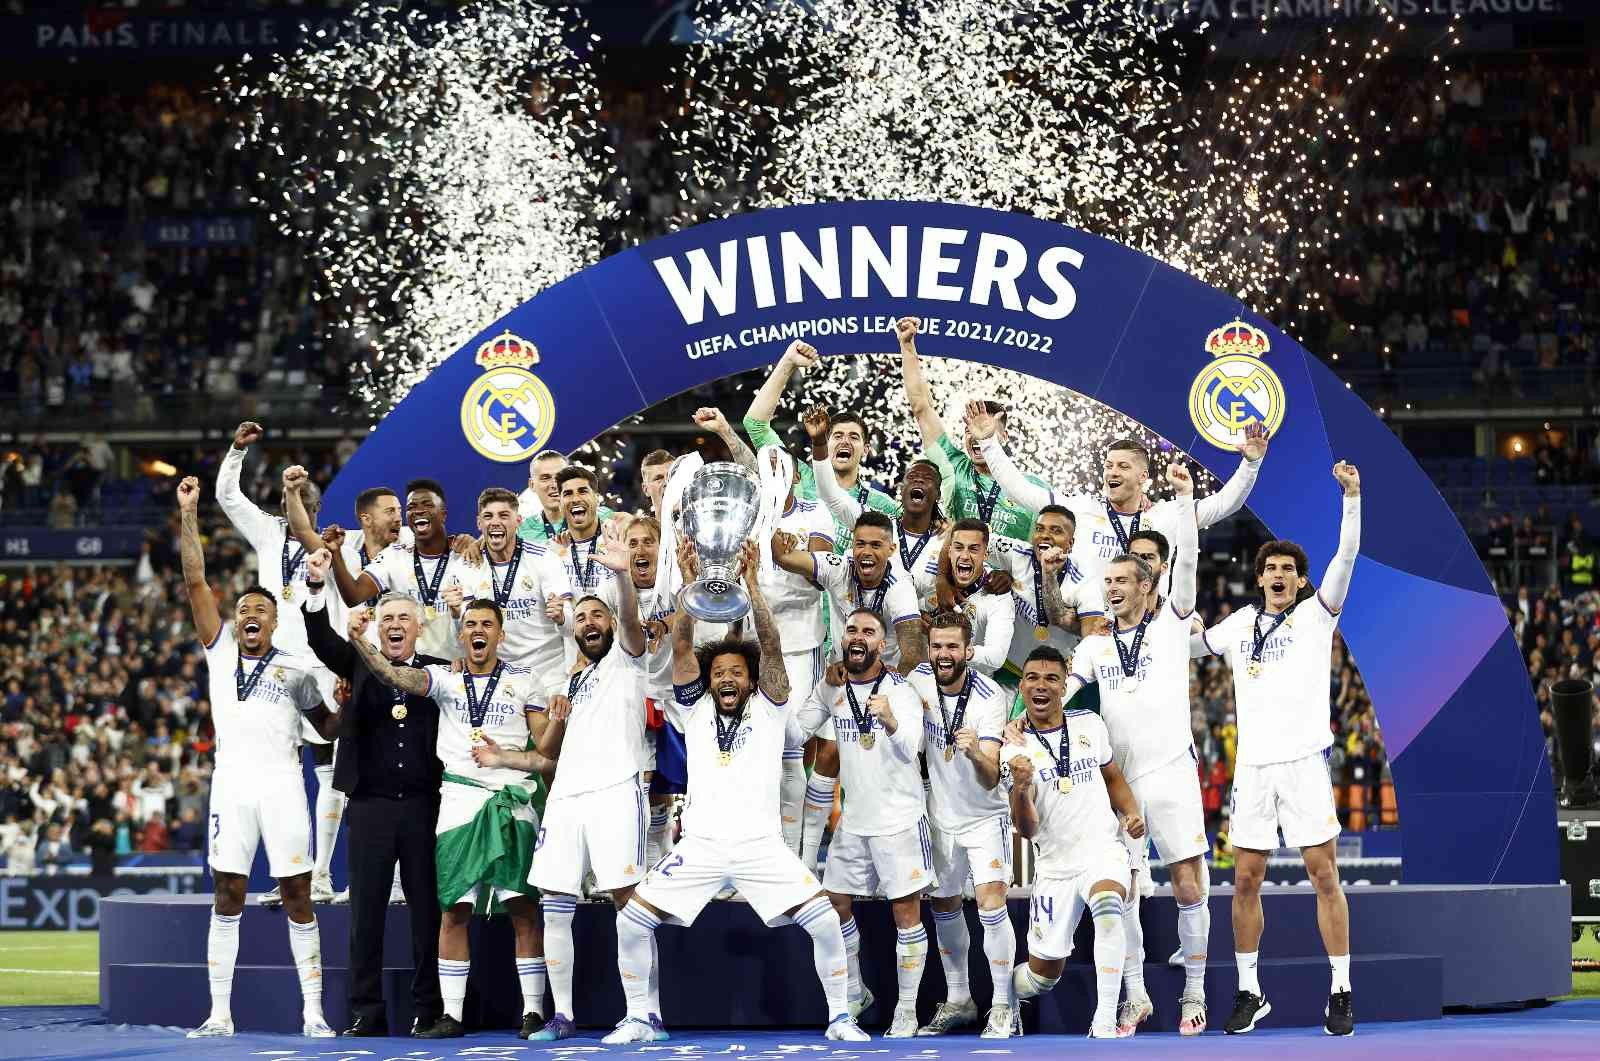 İspanya La Liga şampiyonu Real Madrid, Şampiyonlar Ligi zaferiyle birlikte sezonu 3 kupayla kapadı. Devler Ligi finalindeki rakibi Liverpool ise ...